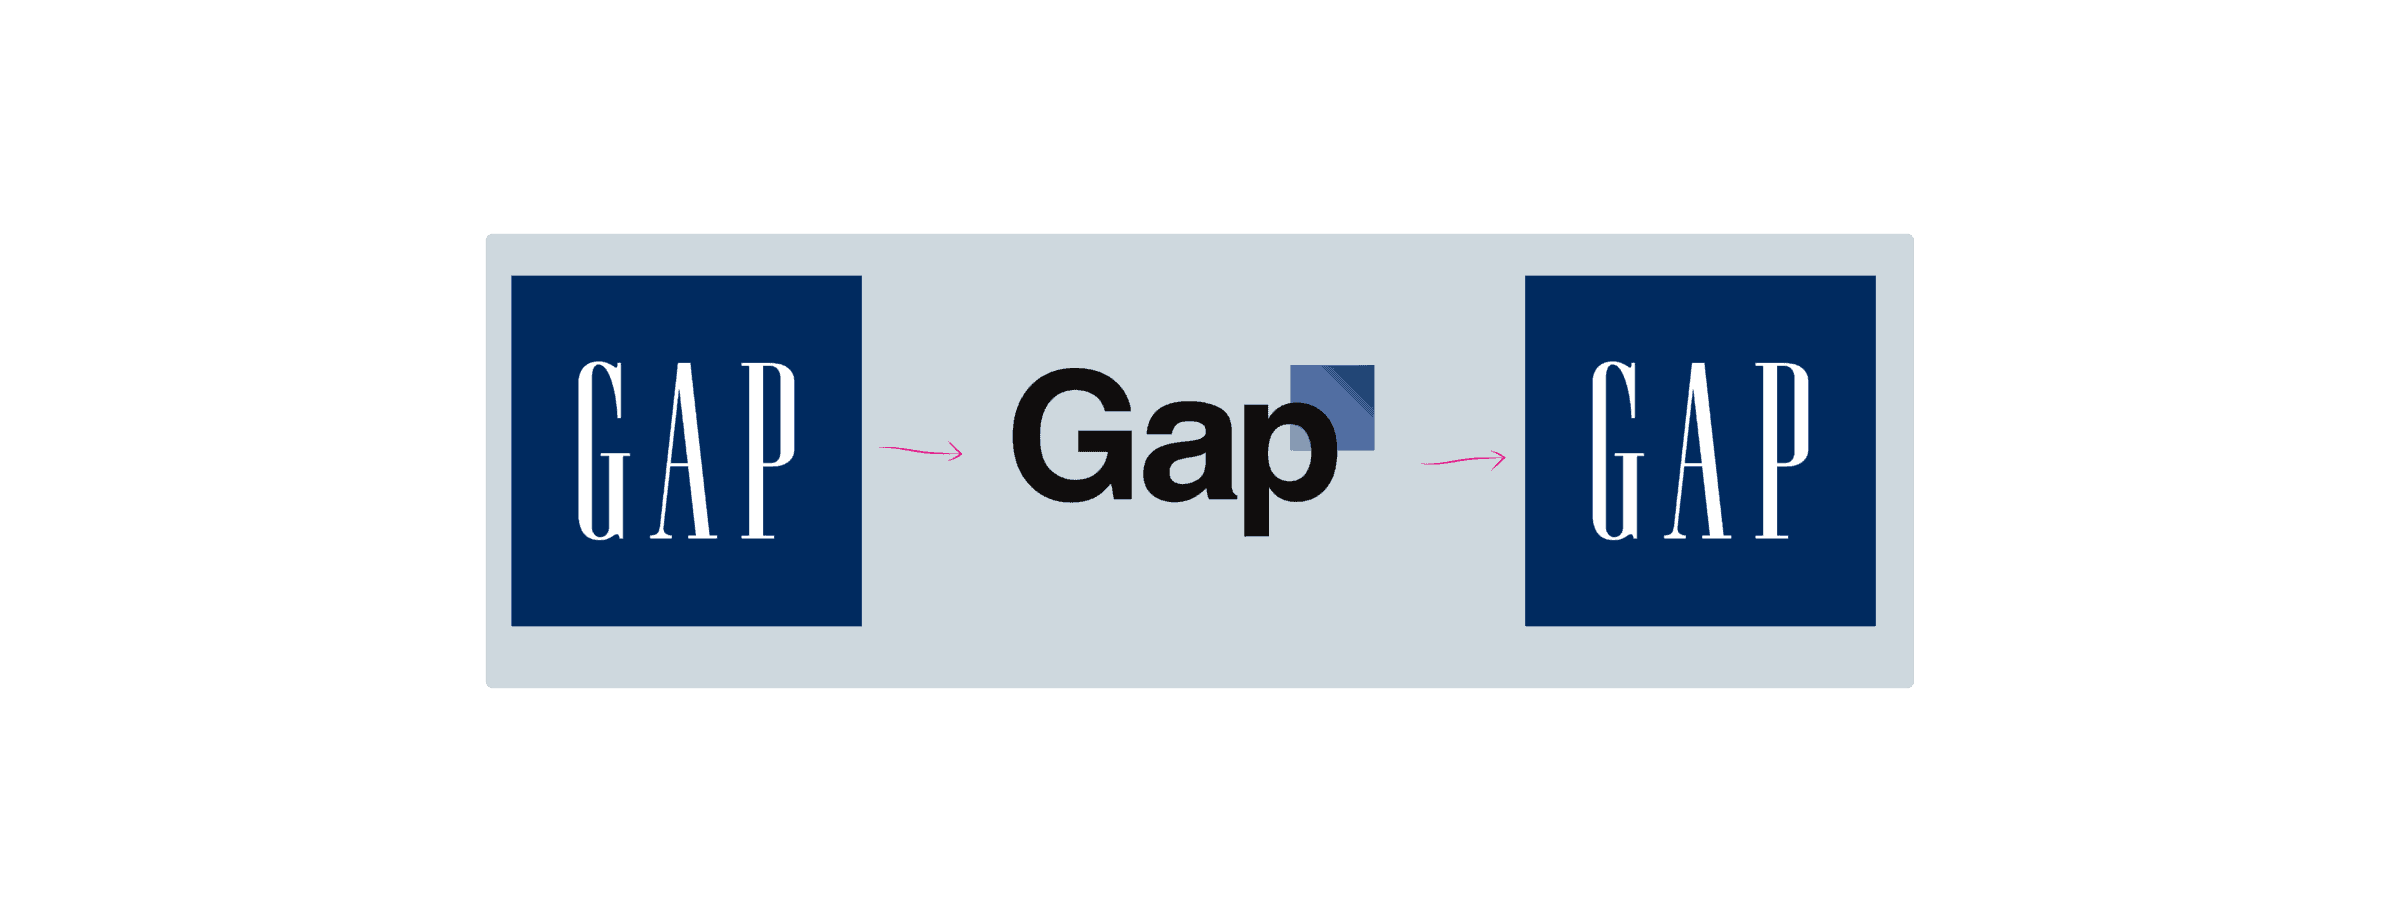 rebranding-gap